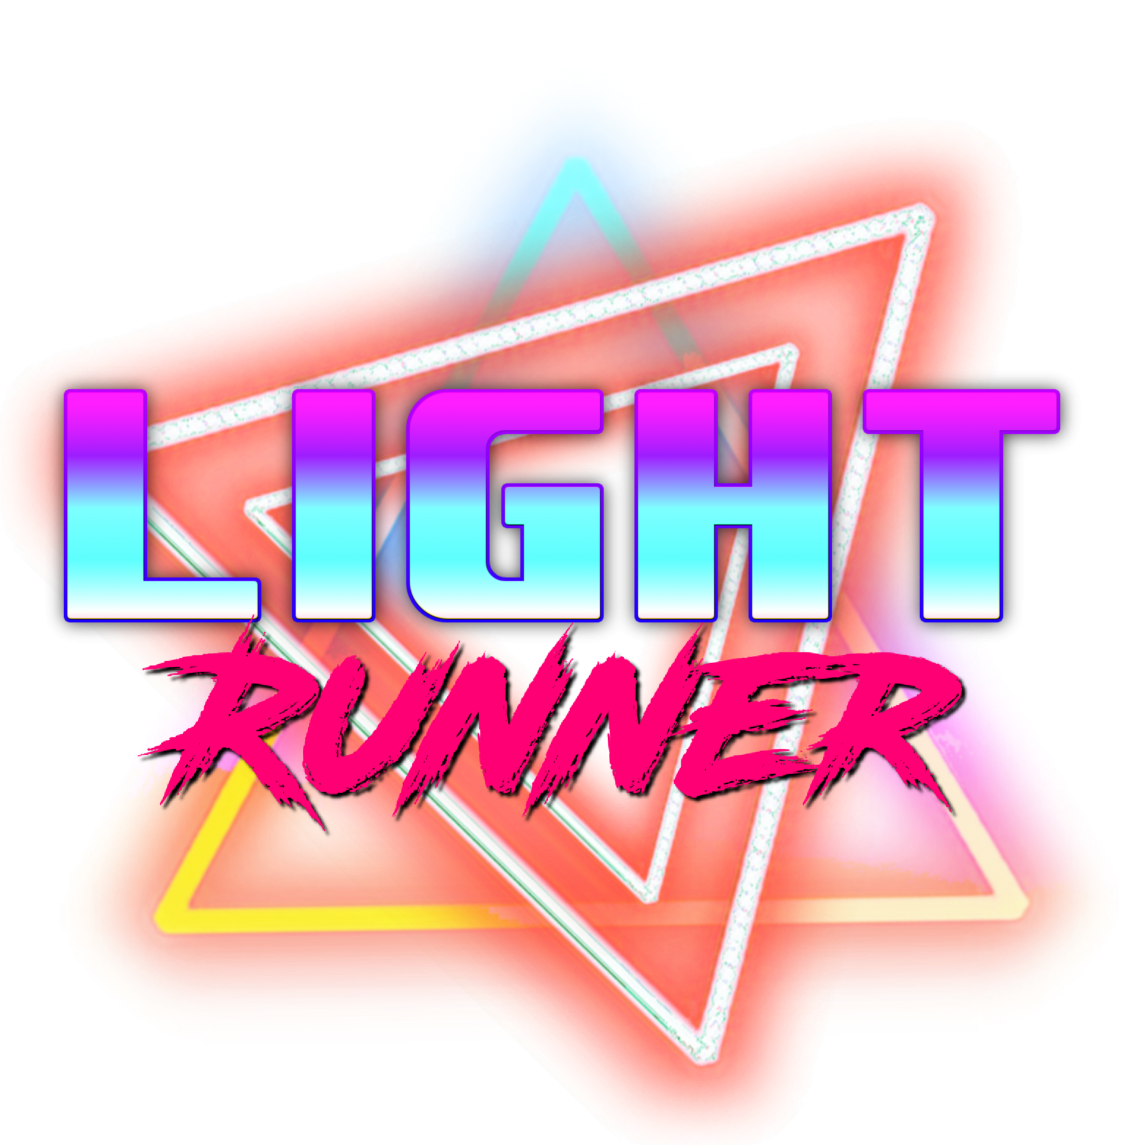 High Quality Retrowave light runner Blank Meme Template